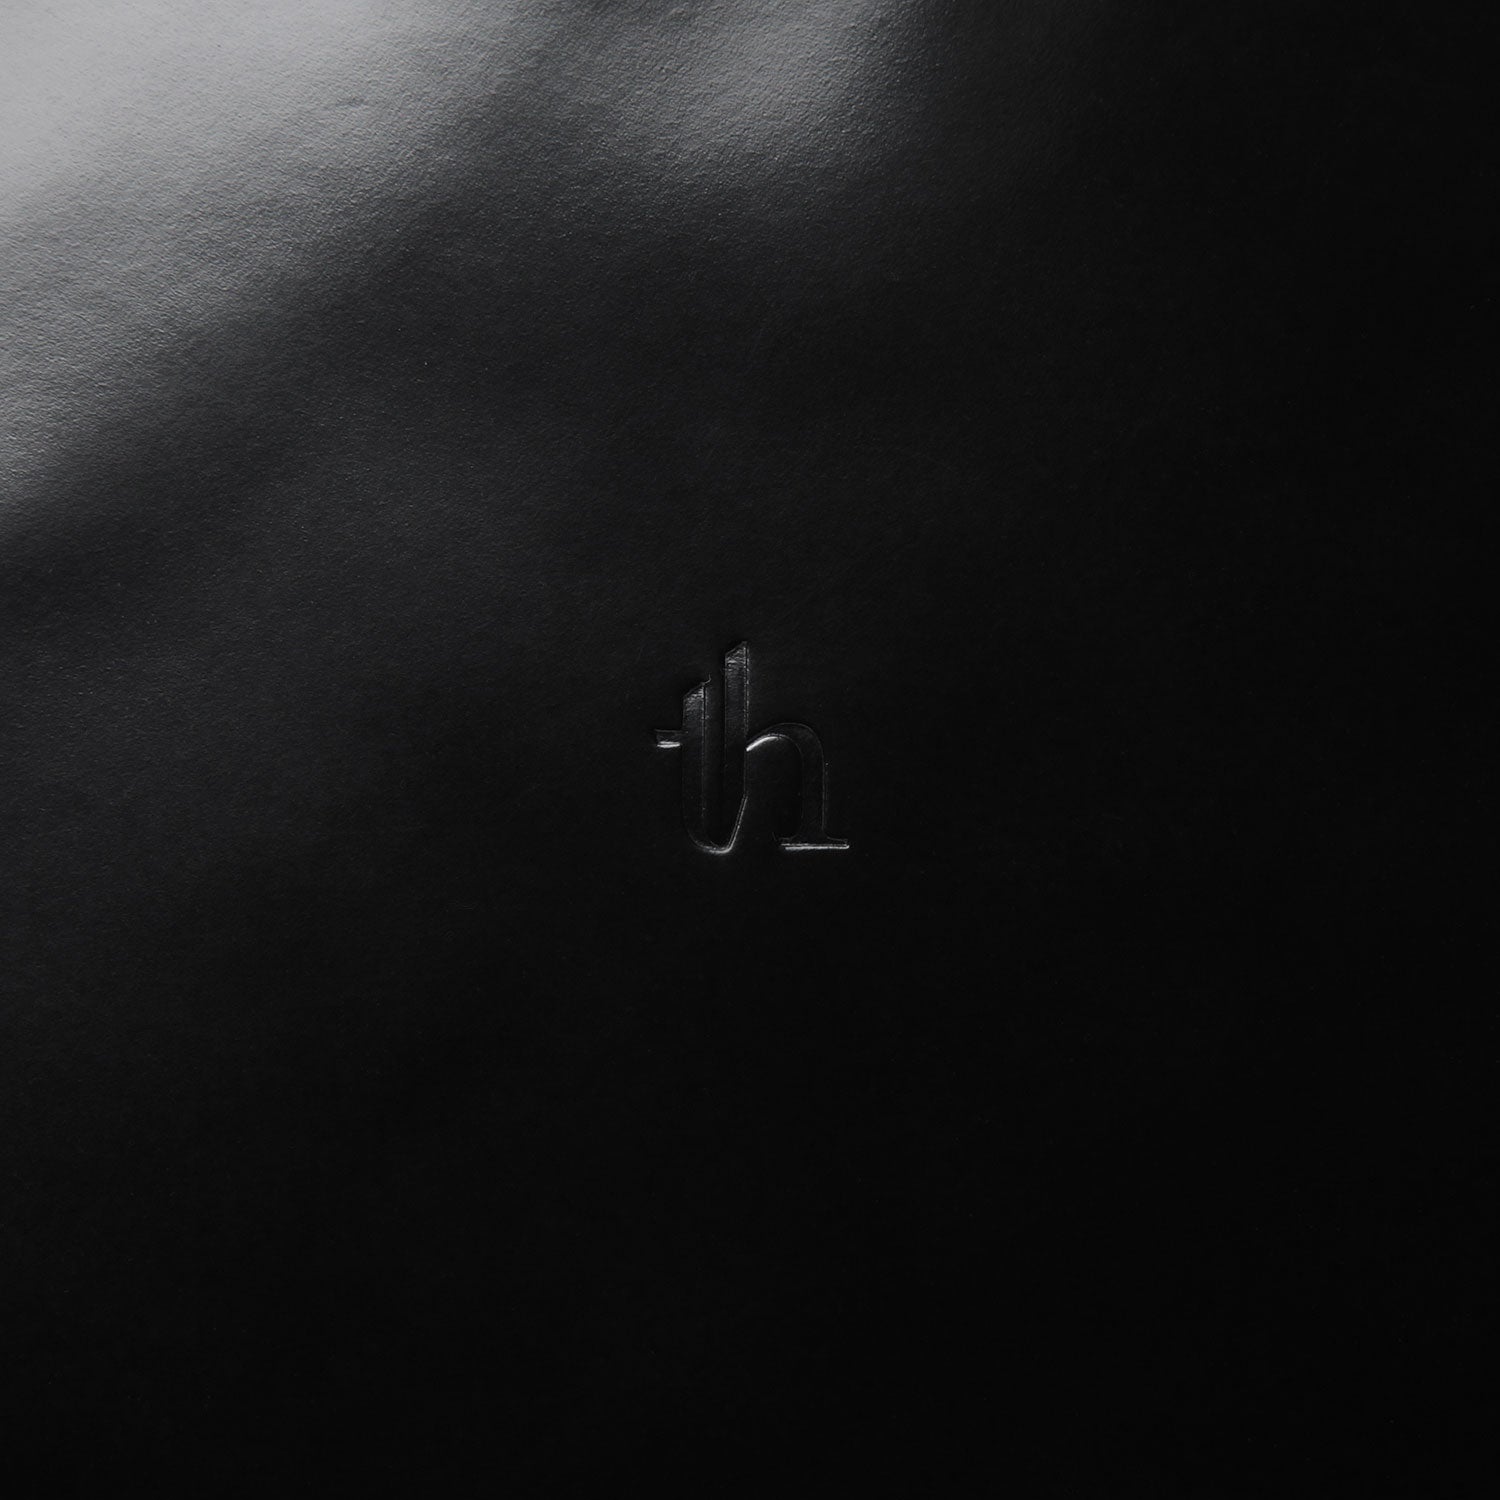 Shoulderbag / black × silver